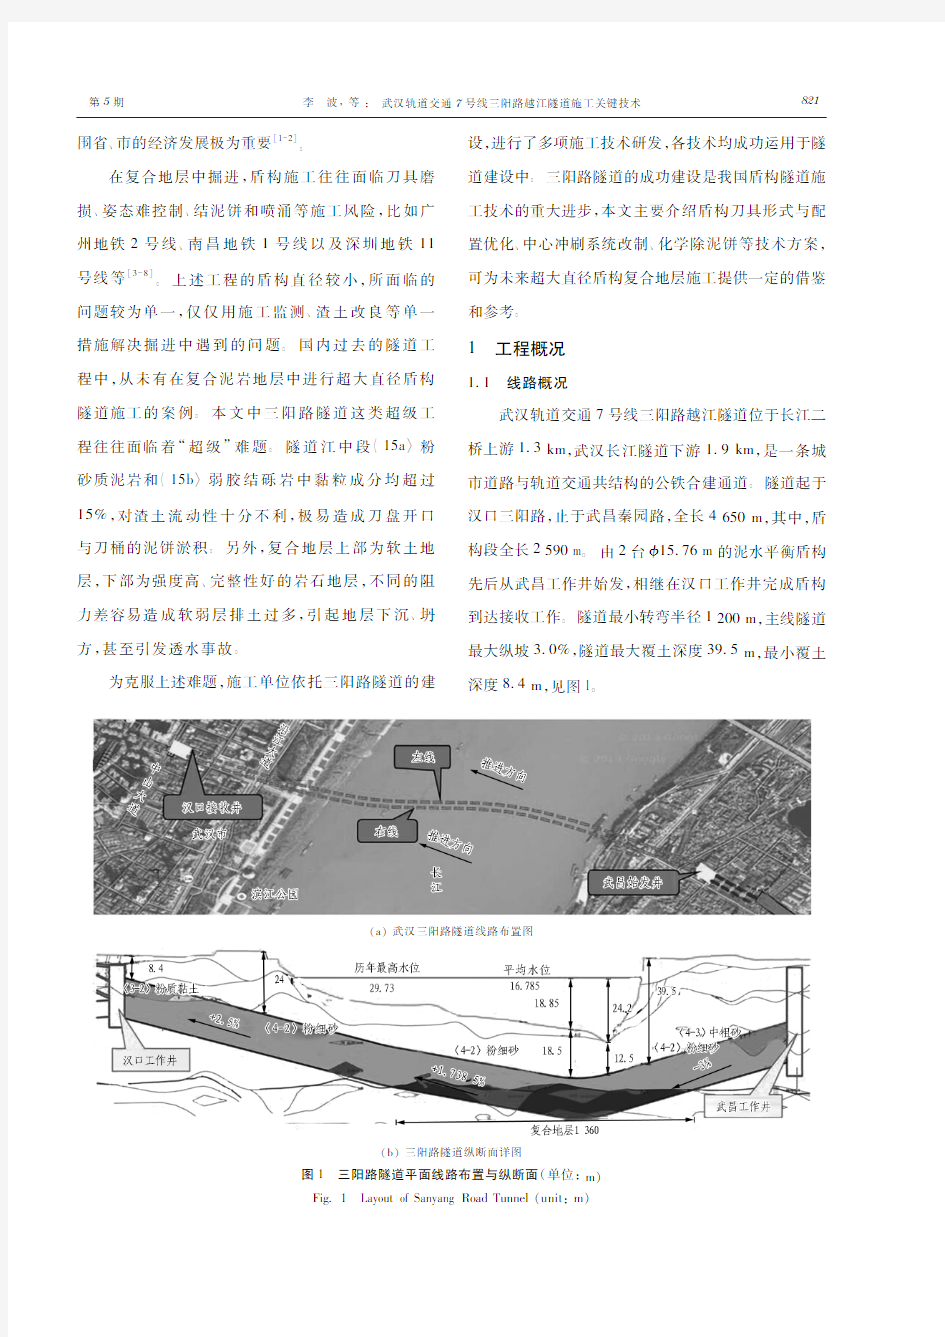 武汉轨道交通7号线三阳路越江隧道施工关键技术